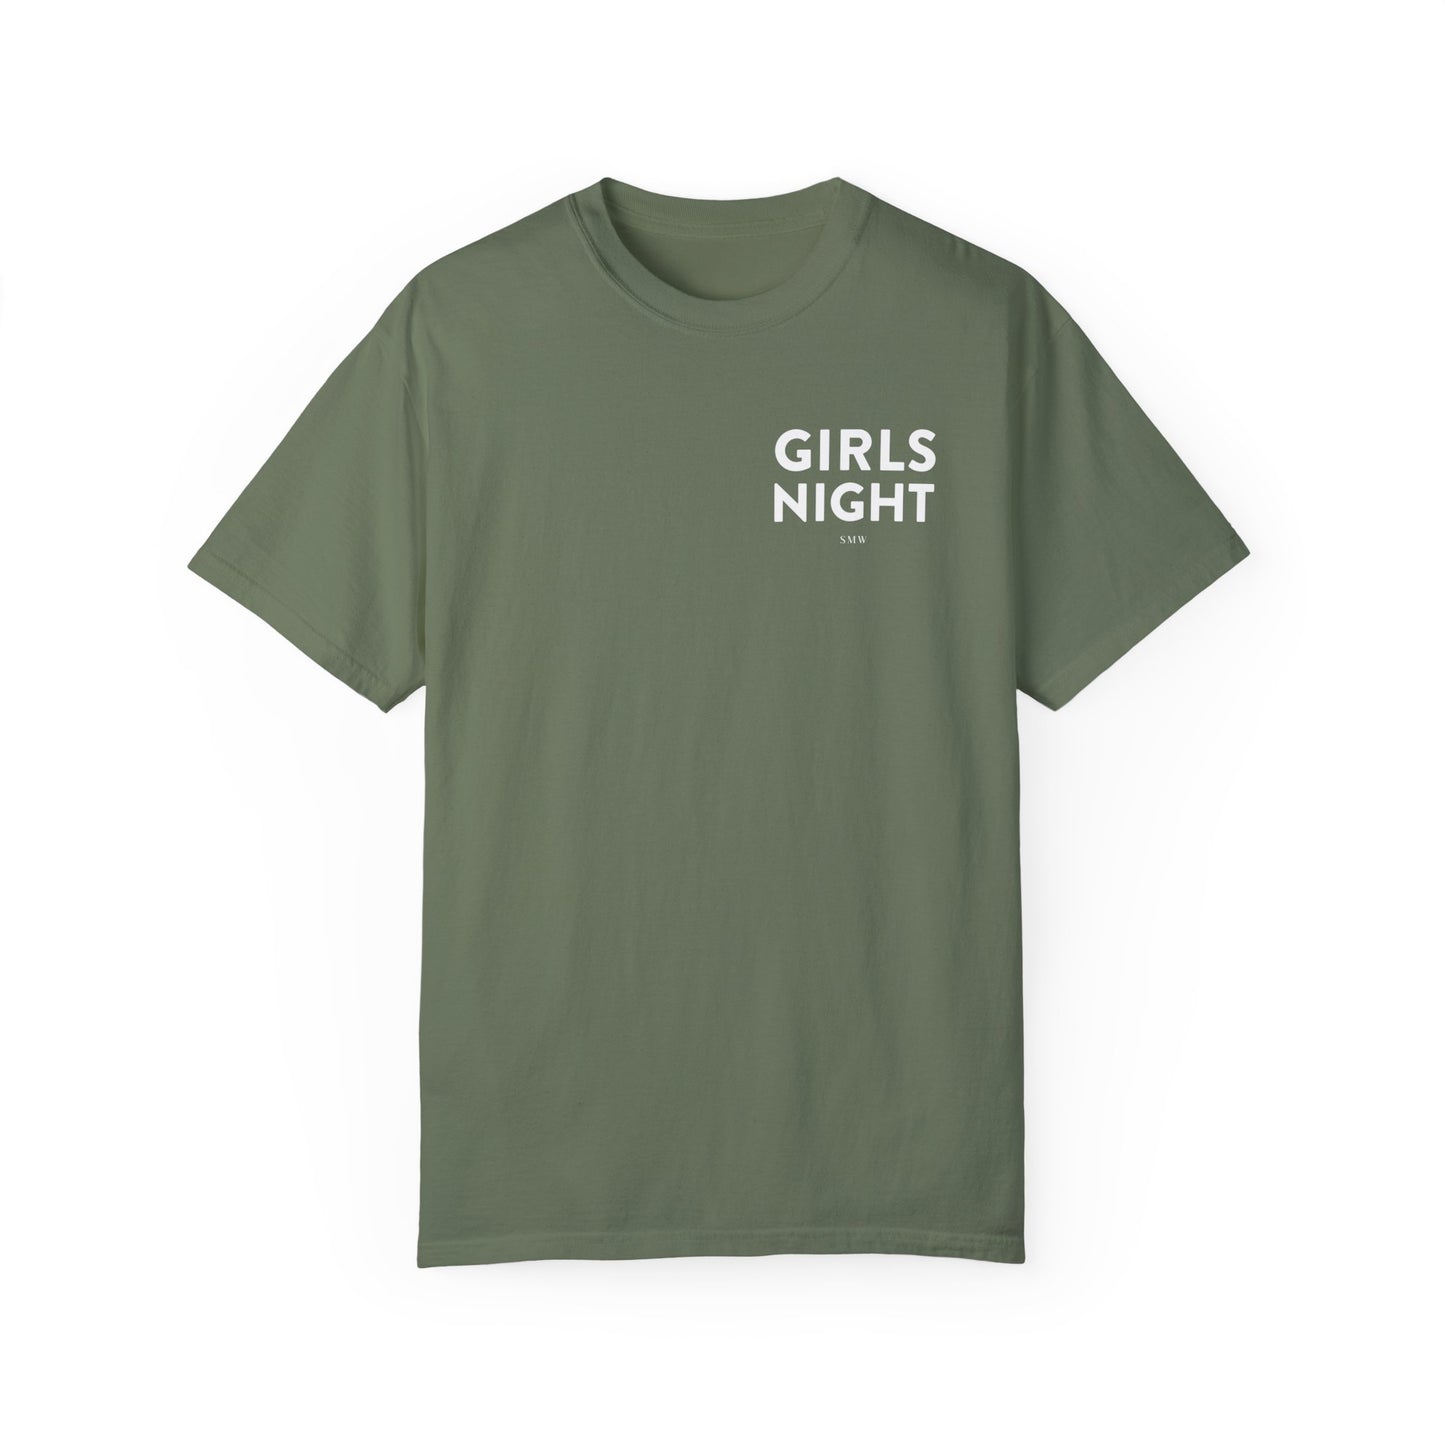 Girls Night Sleep Shirt